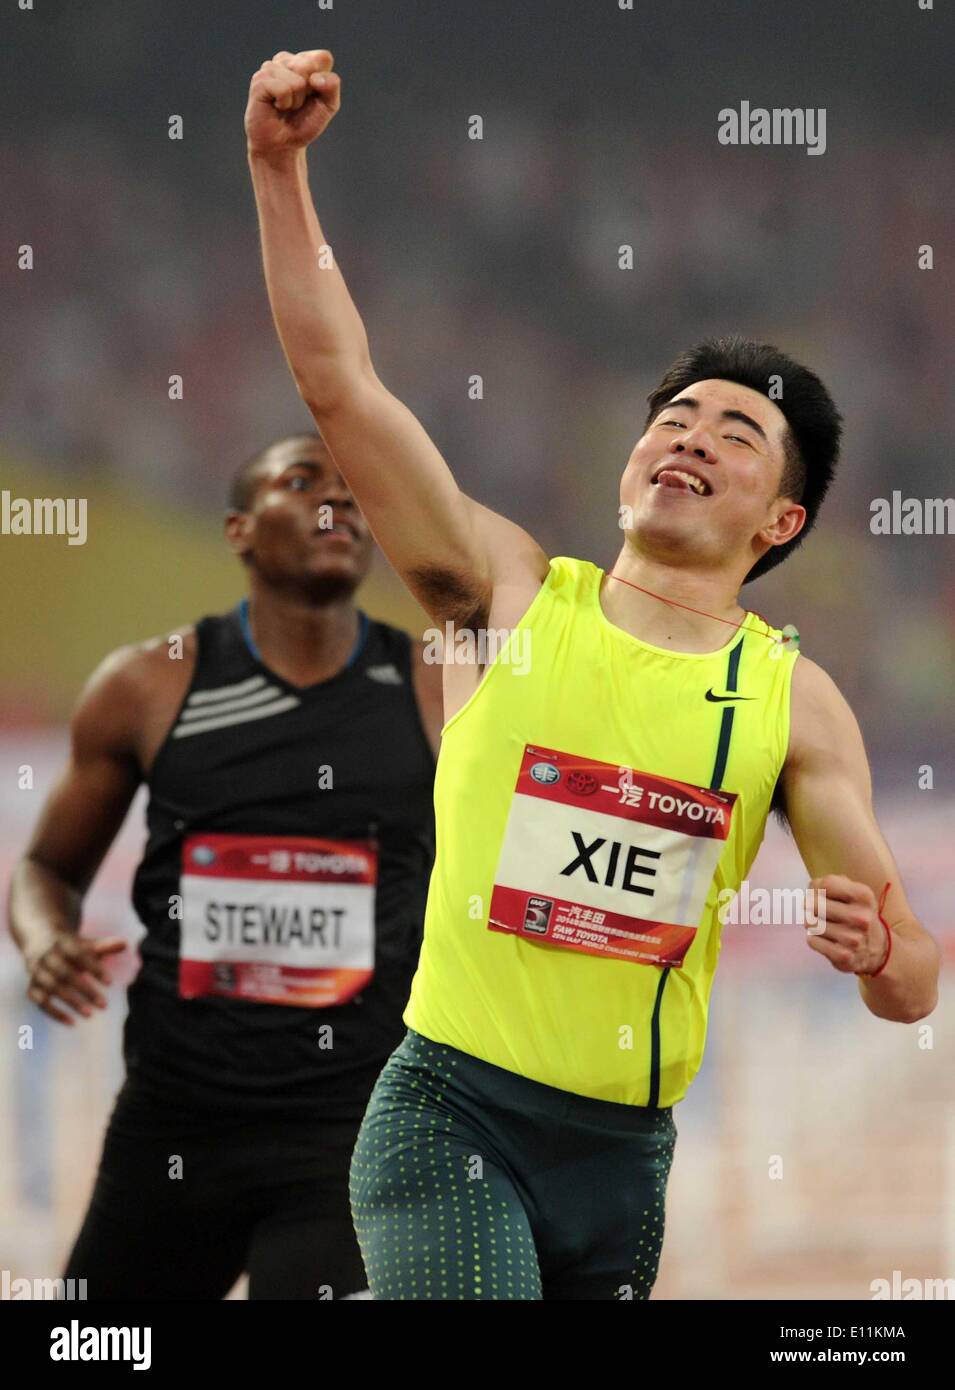 Pechino, Cina. 21 Maggio, 2014. Xie Wenjun della Cina festeggia dopo aver vinto gli uomini 110m Hurdles presso la IAAF World Challenge di Beijing in Cina, 21 maggio 2014. Credito: Gong Lei/Xinhua/Alamy Live News Foto Stock